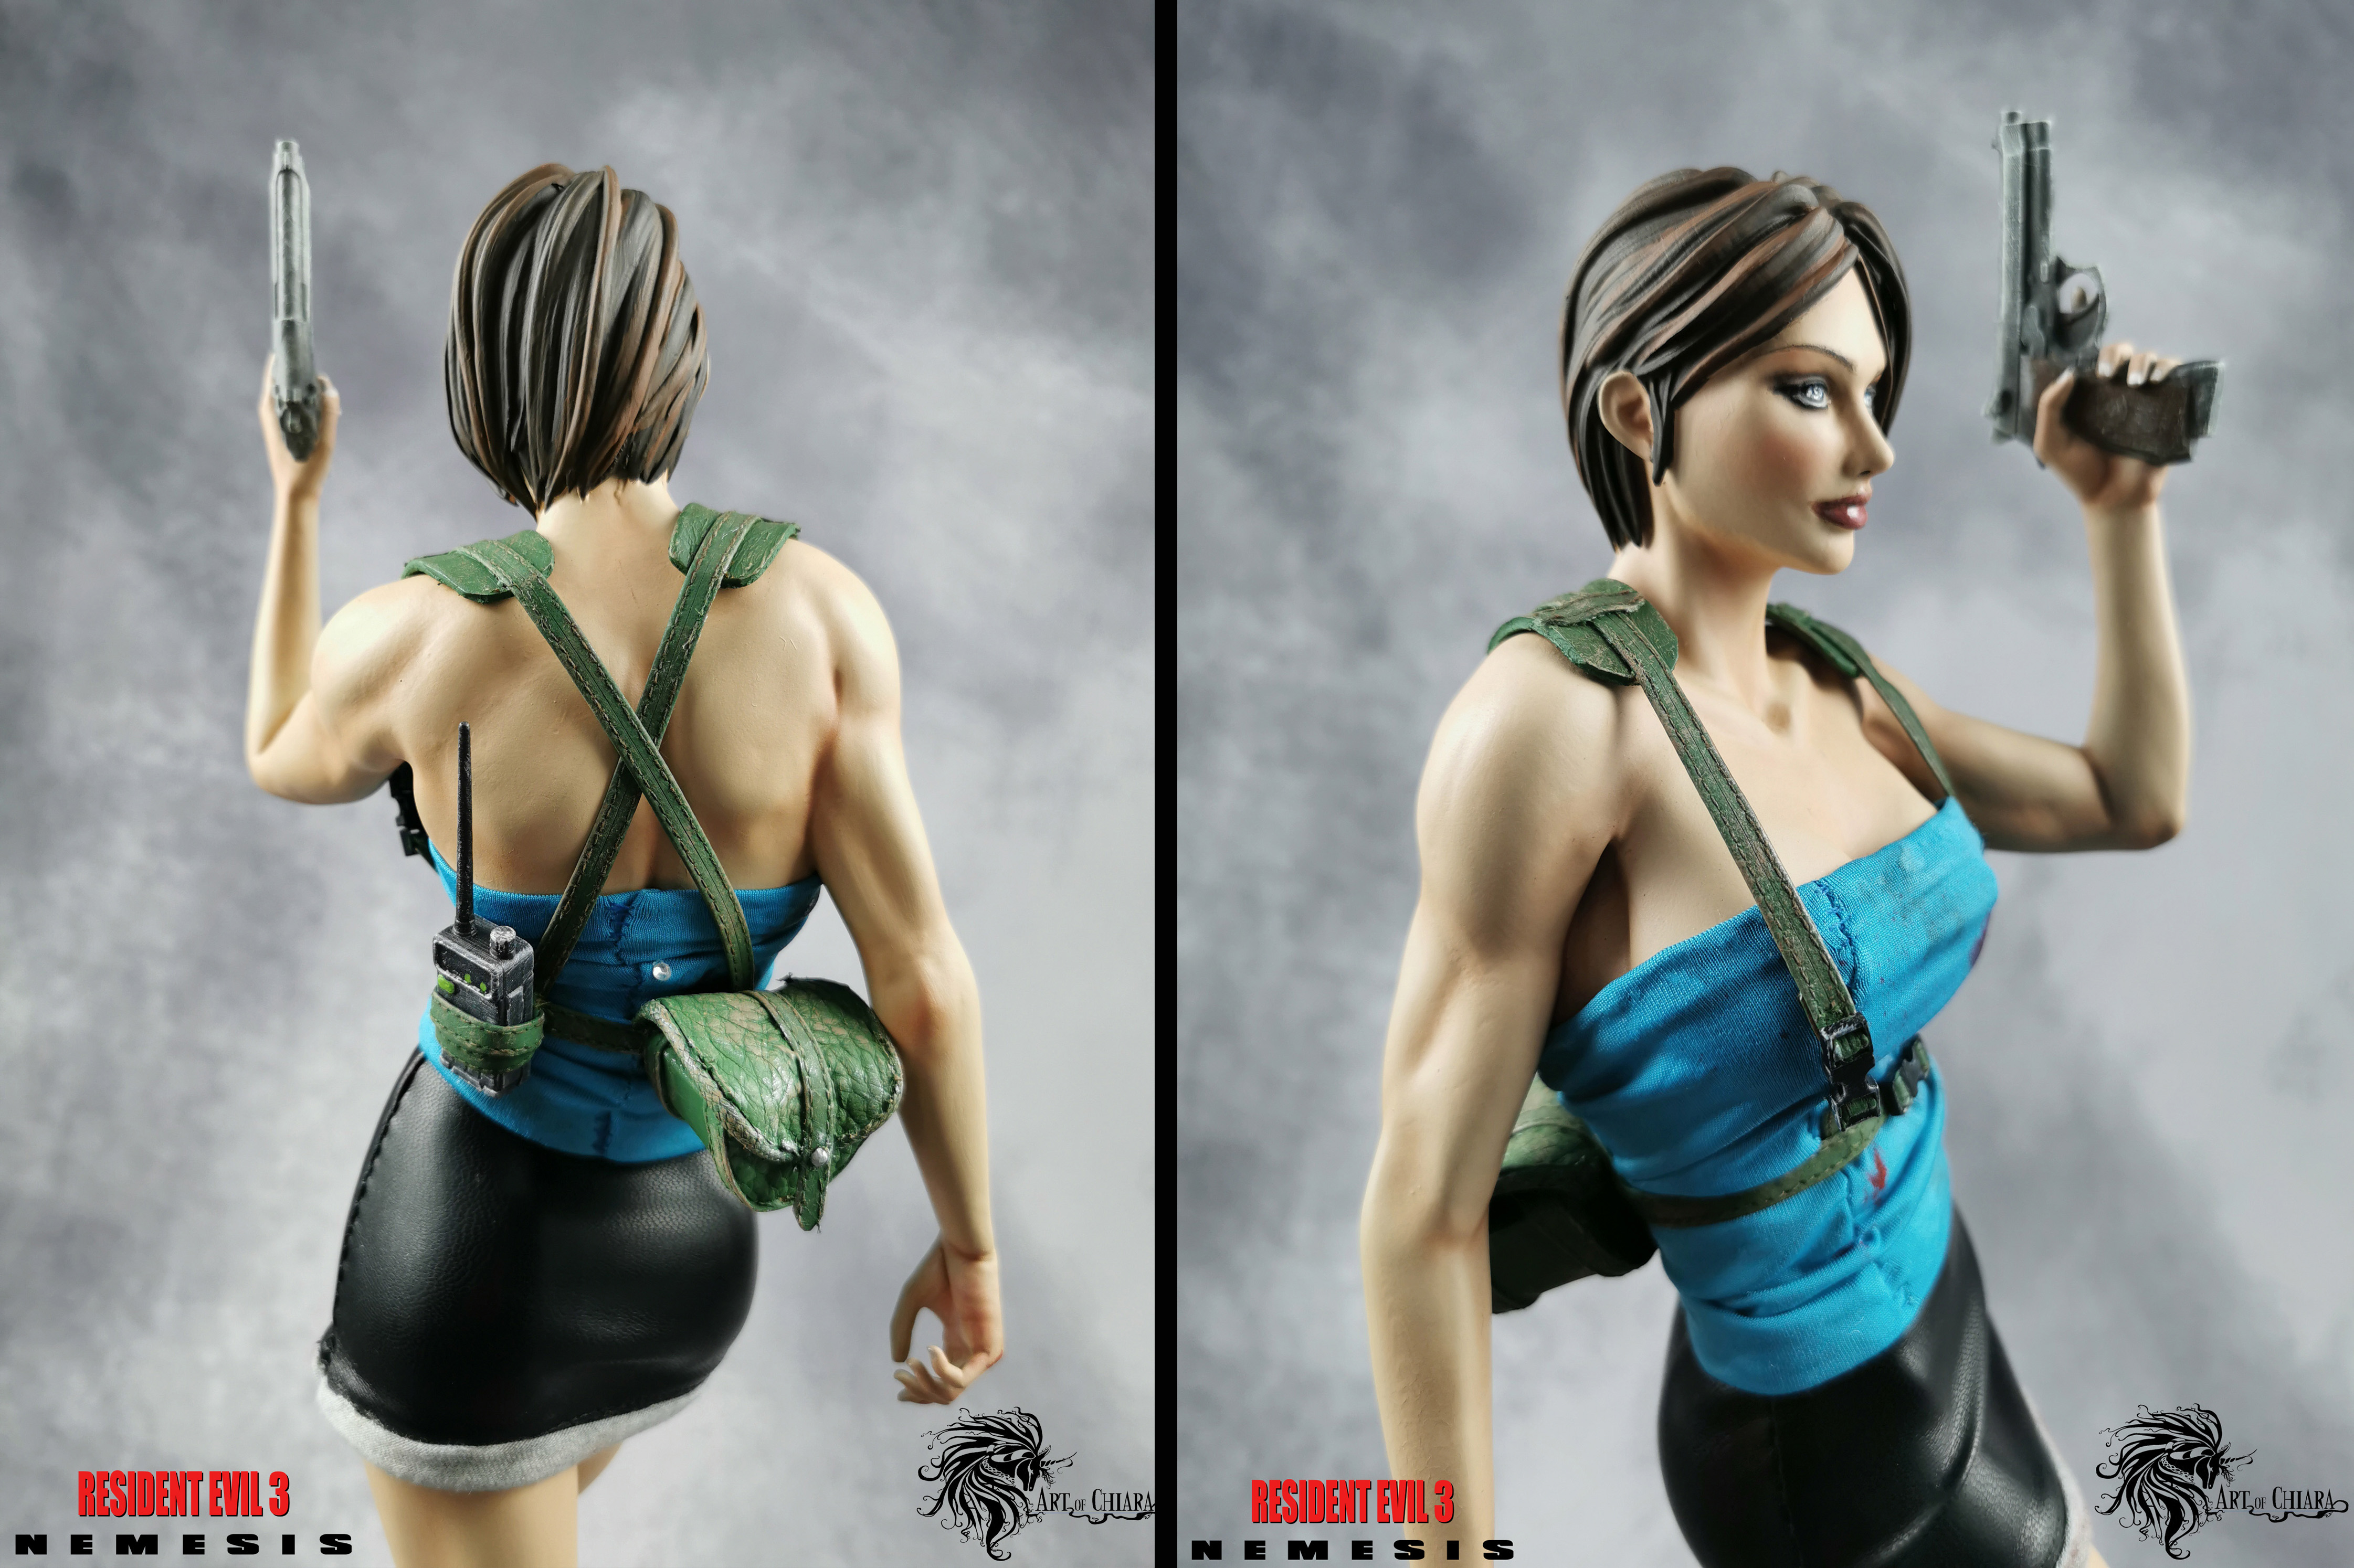 Jill Valentine (Resident Evil 3: Nemesis)